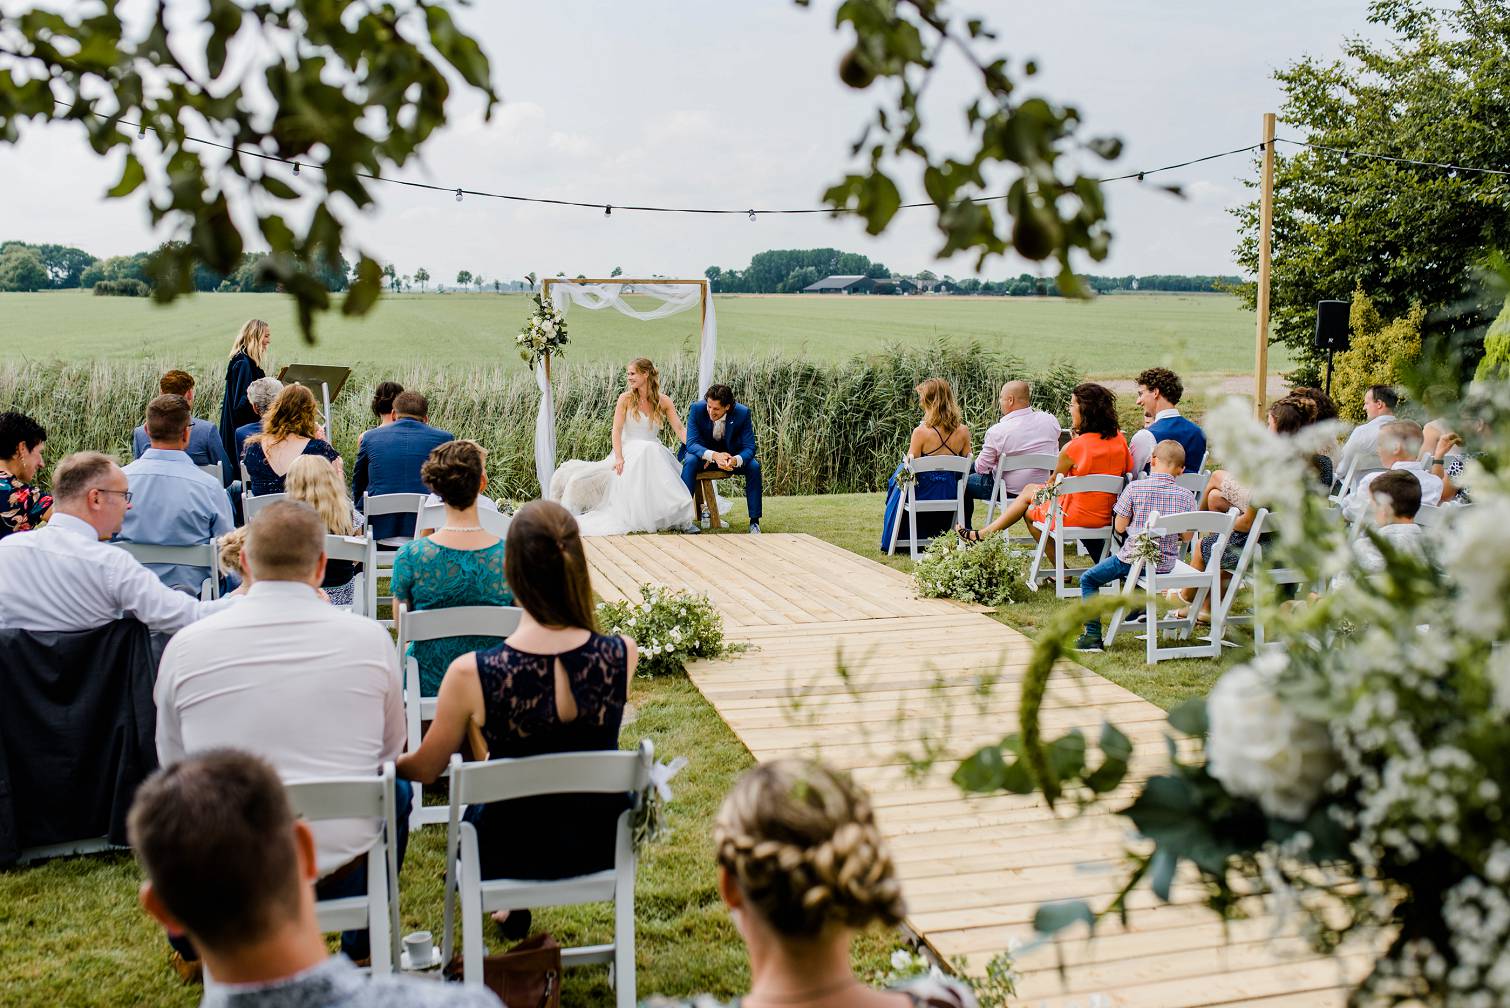 Festival bruiloft in de achtertuin - Boerenbruiloft - Trouwfotograaf Groningen